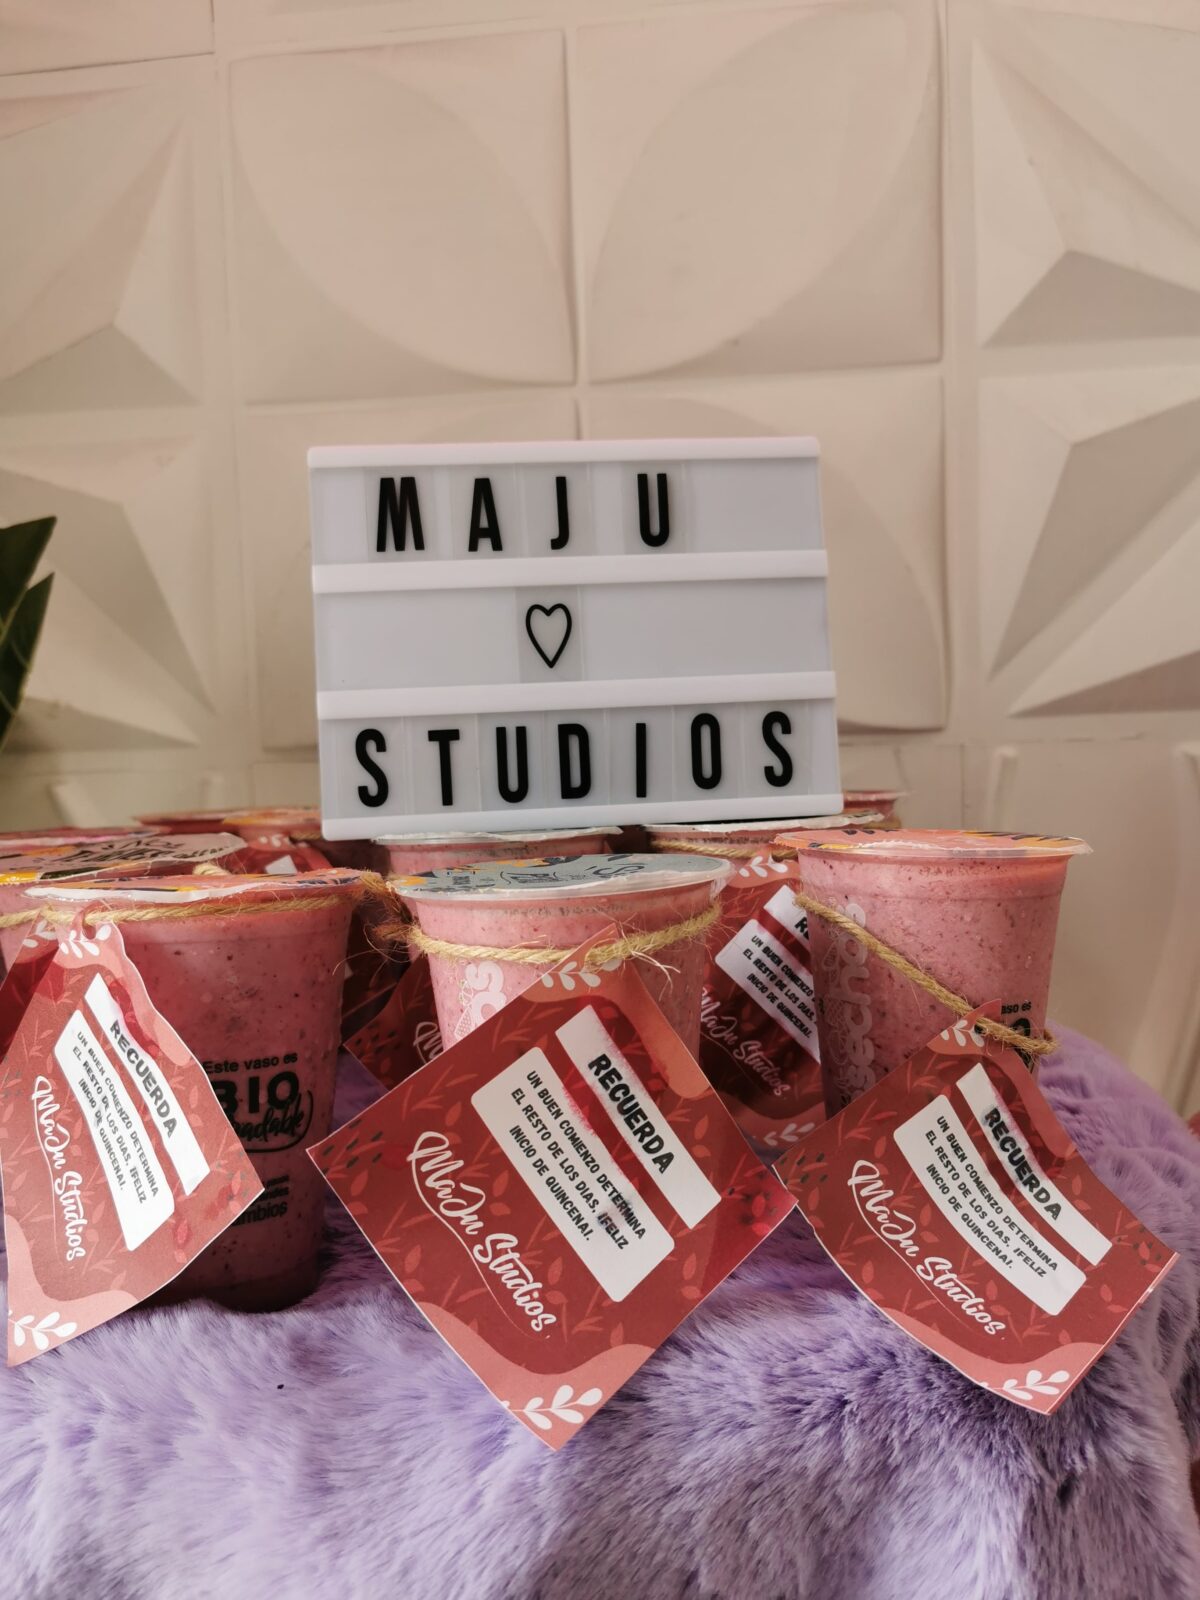 Batidos colibrí morado o frutos rojos MaJu Studios